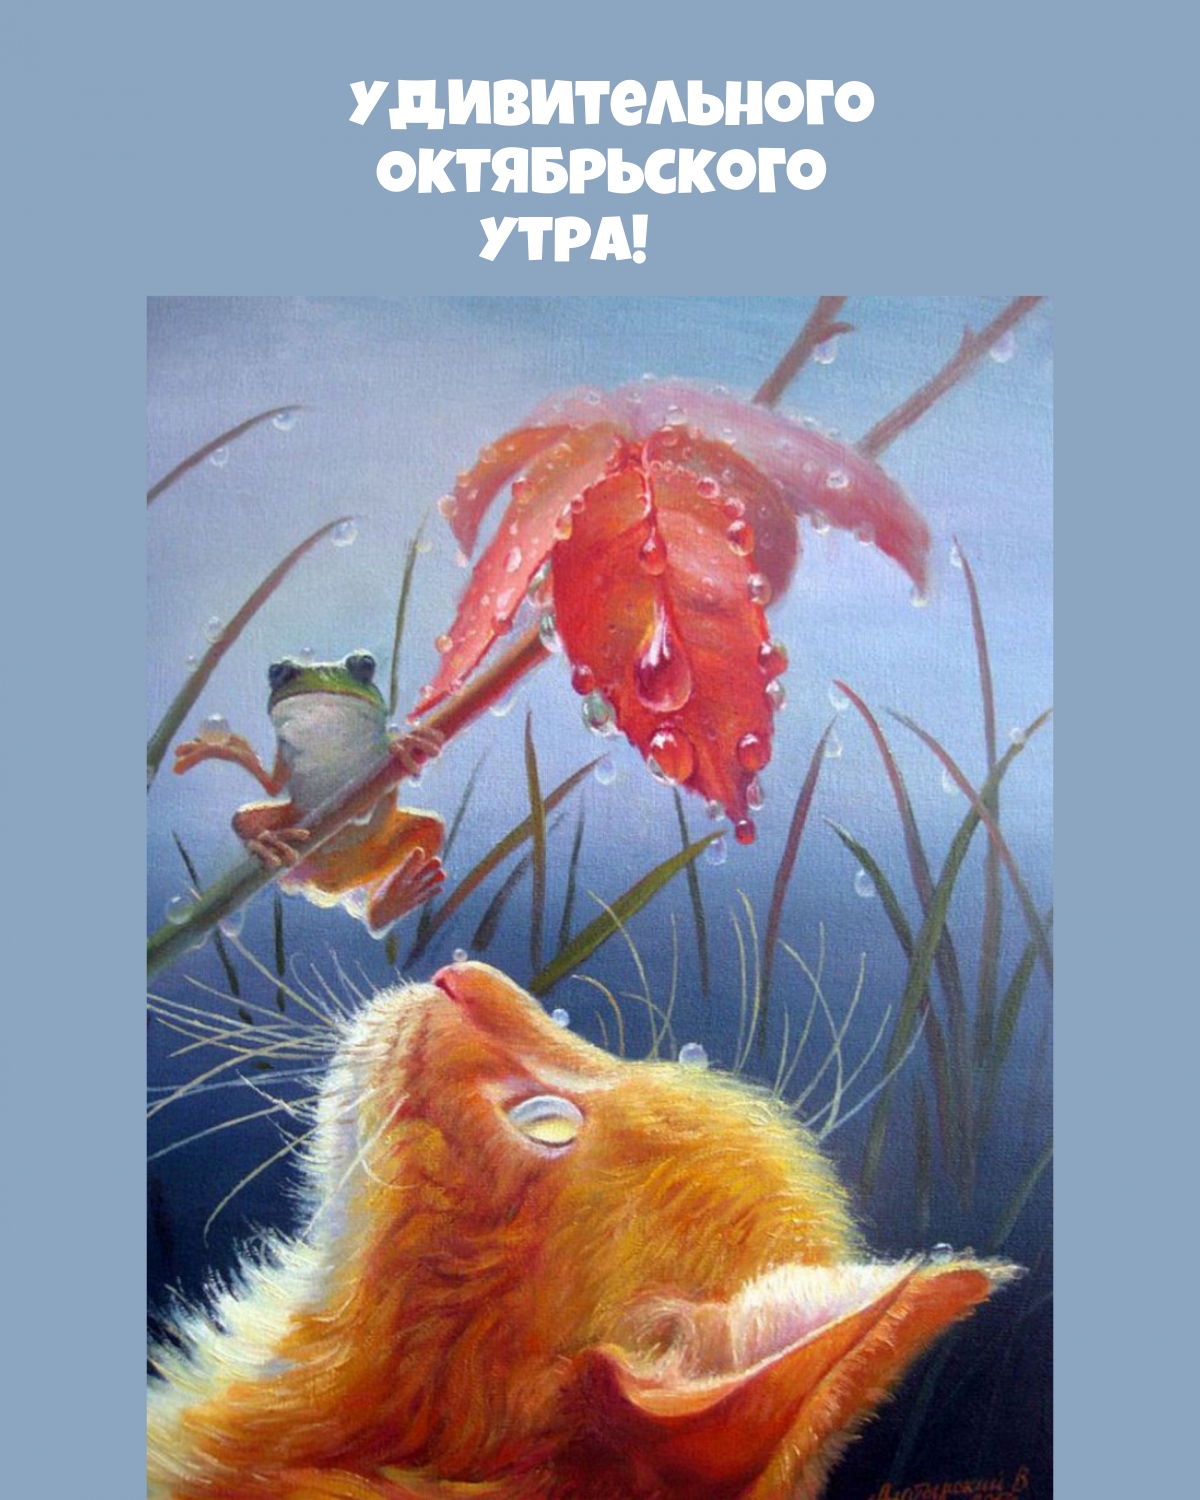 Кот и Домовой, художник Вячеслав Алатырский